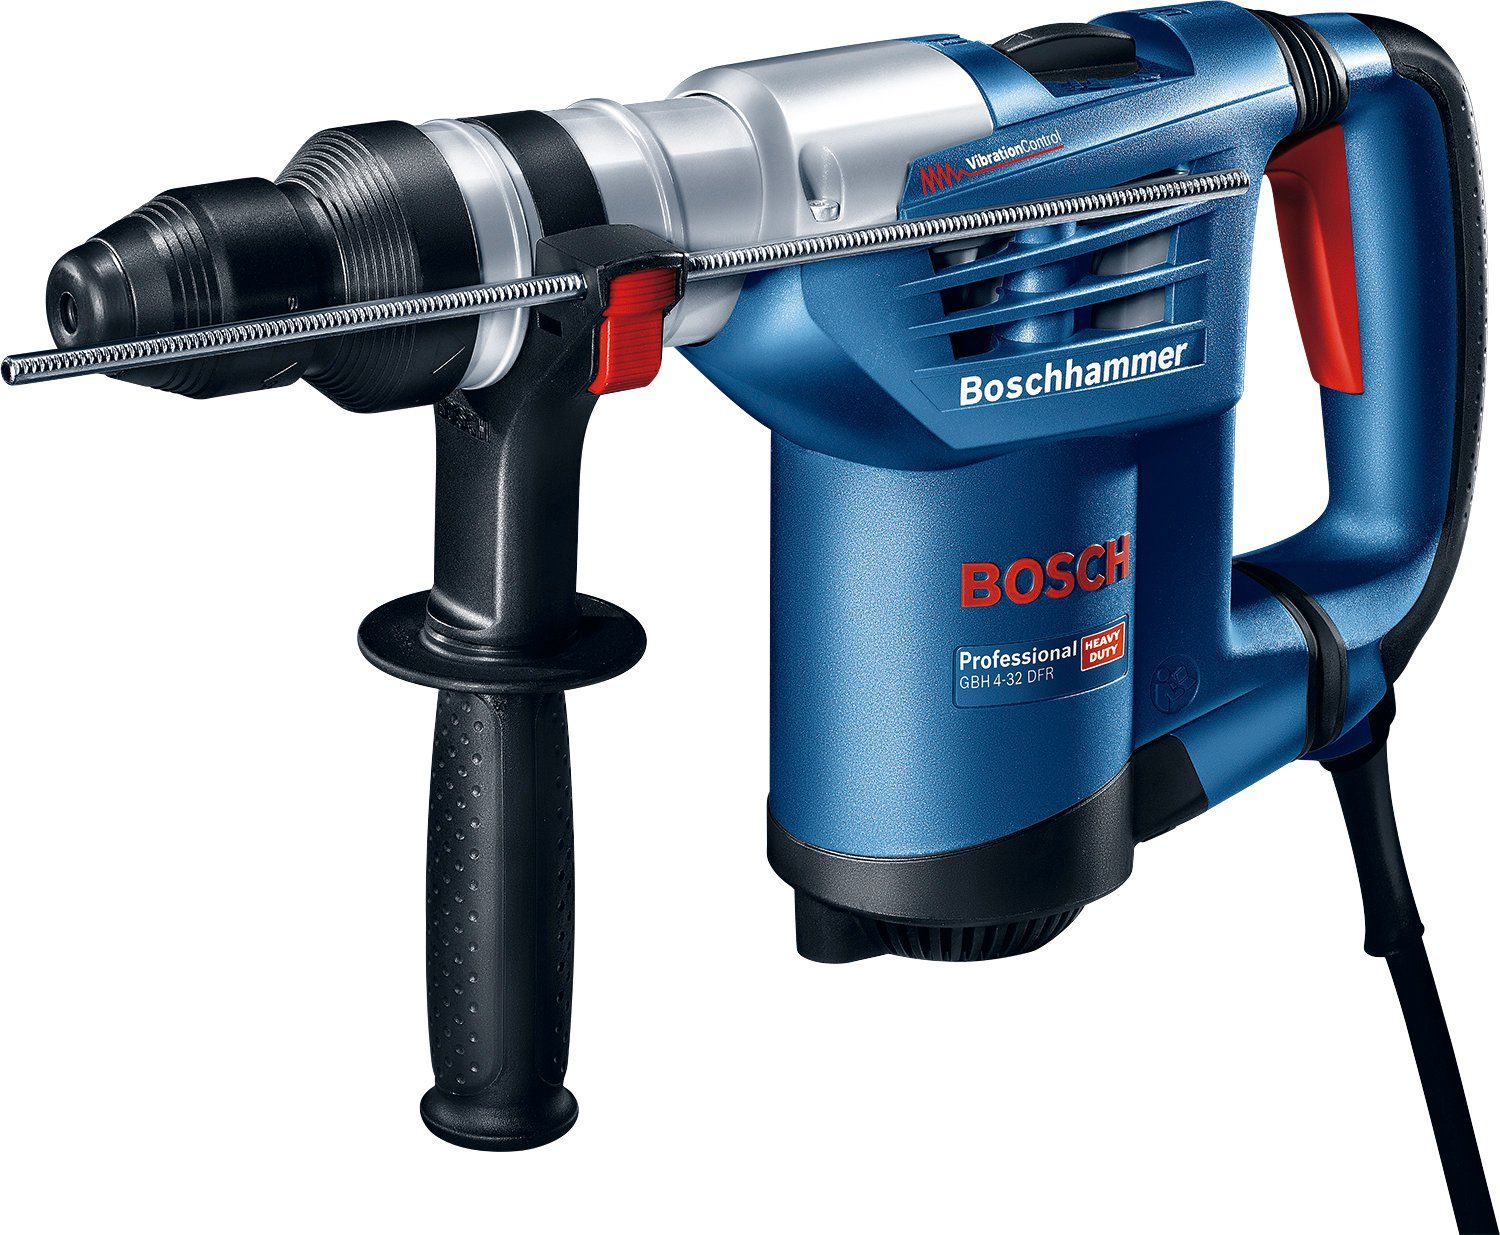 Bohrhammer Bosch 3600 max. Handwerkkoffer Professional mit 4-32 DFR, U/min, GBH Schnellspannbohrfutter,